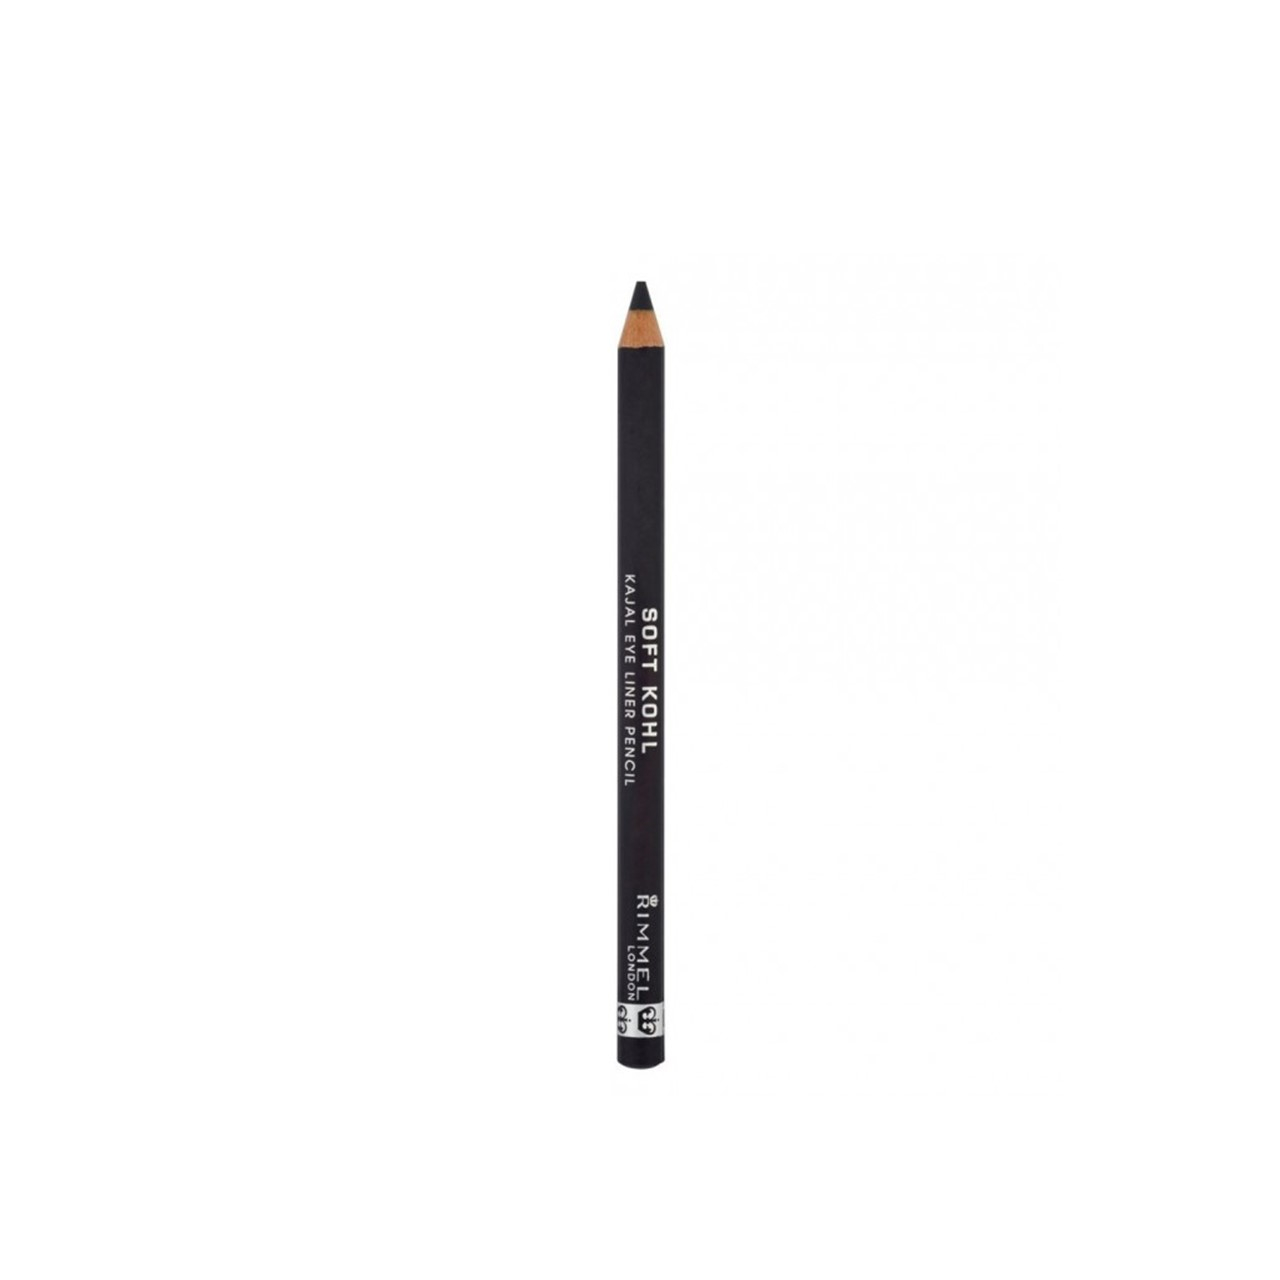 Rimmel London Soft Kohl Kajal Eye Liner Pencil 061 Jet Black 1.2g